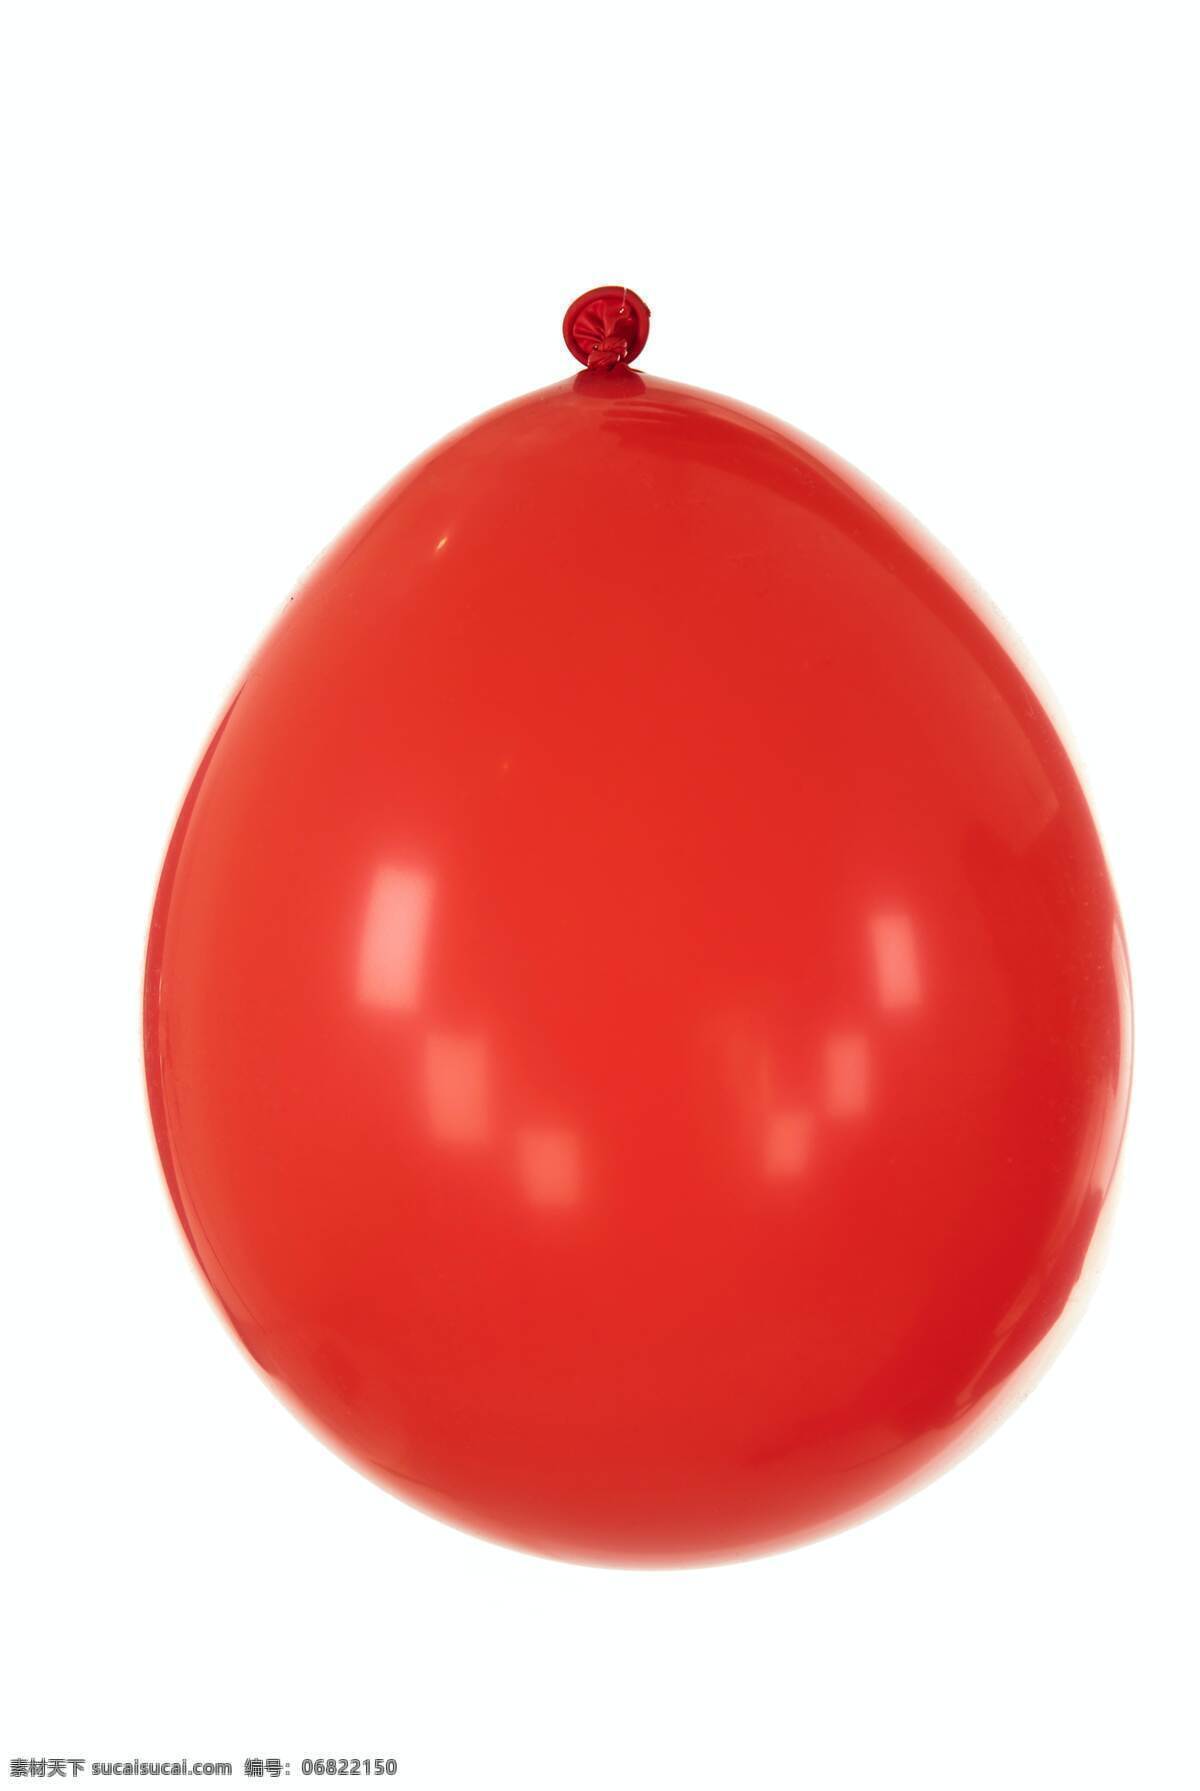 红色气球 红色 气球 红球 气体 球 节日 氛围 生活百科 生活素材